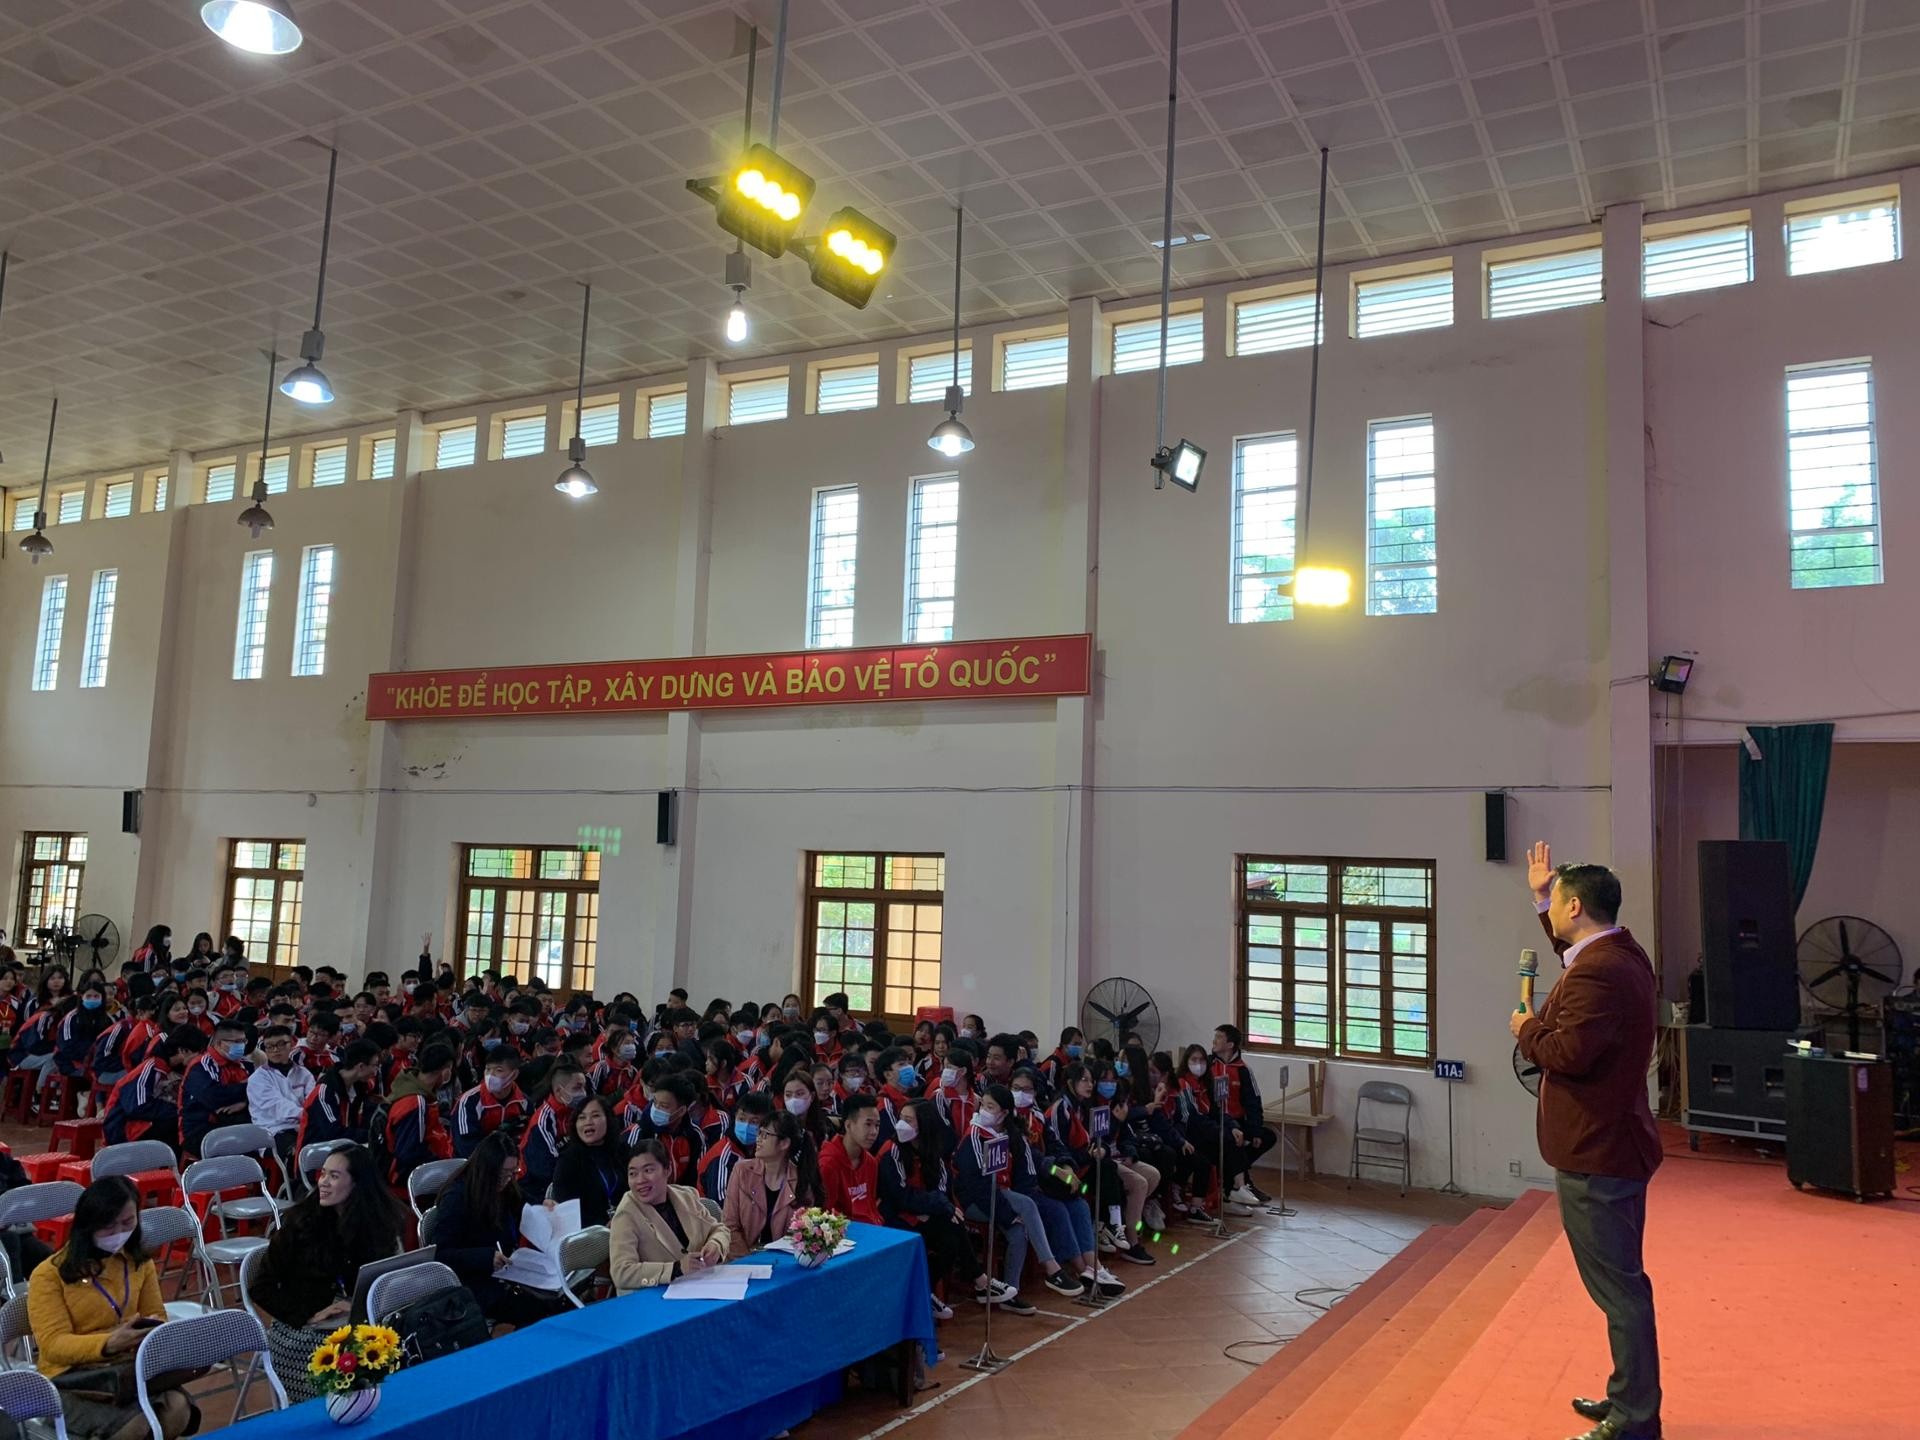 Trung tâm tâm dịch vụ việc làm Lạng Sơn tổ chức buổi ngoại khóa tư vấn, hướng nghiệp cho học sinh Trường THPT Hoàng Văn Thụ